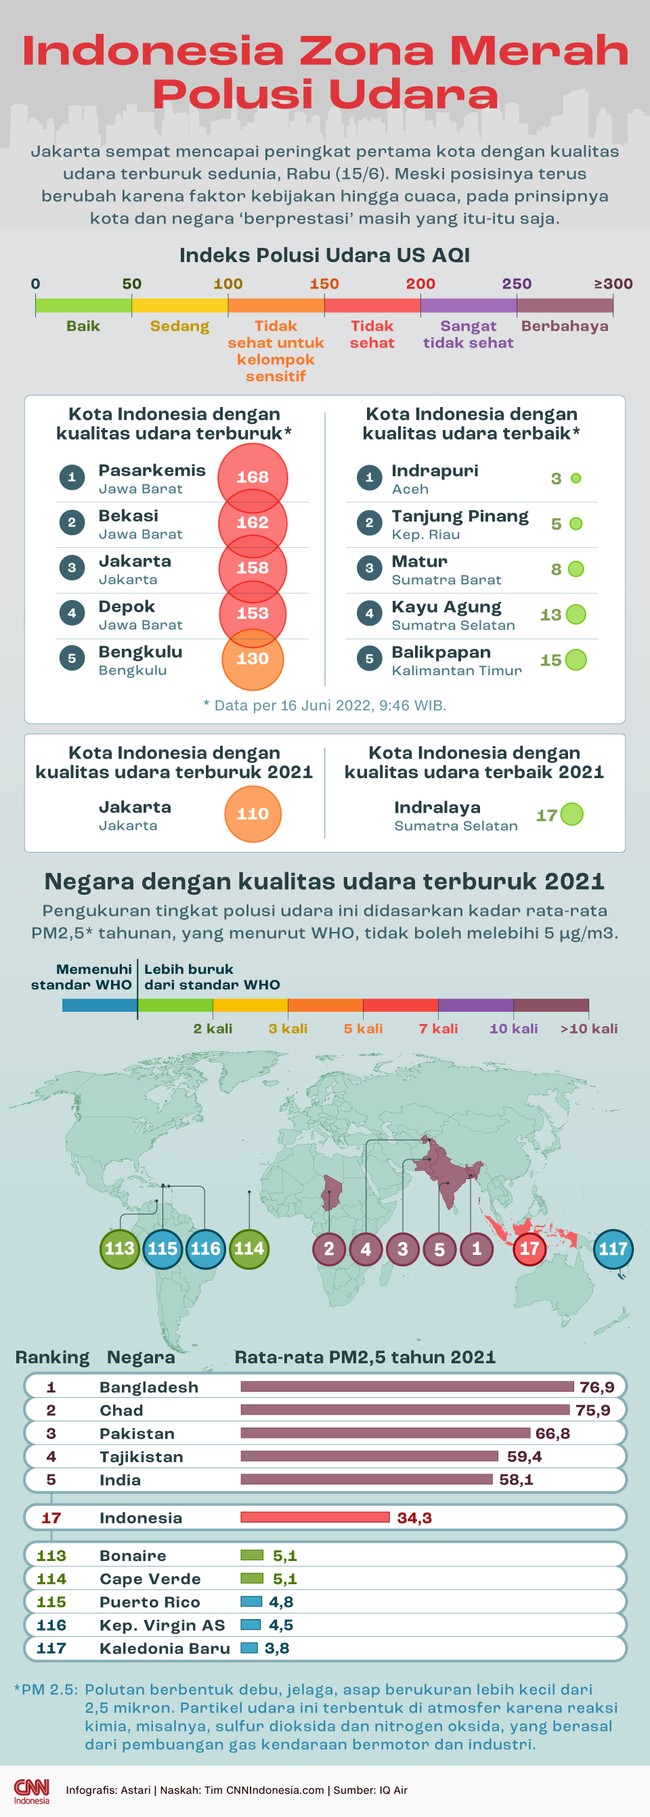 Jakarta sempat mencapai peringkat pertama kota dengan kualitas udara terburuk sedunia, Rabu (15/6).